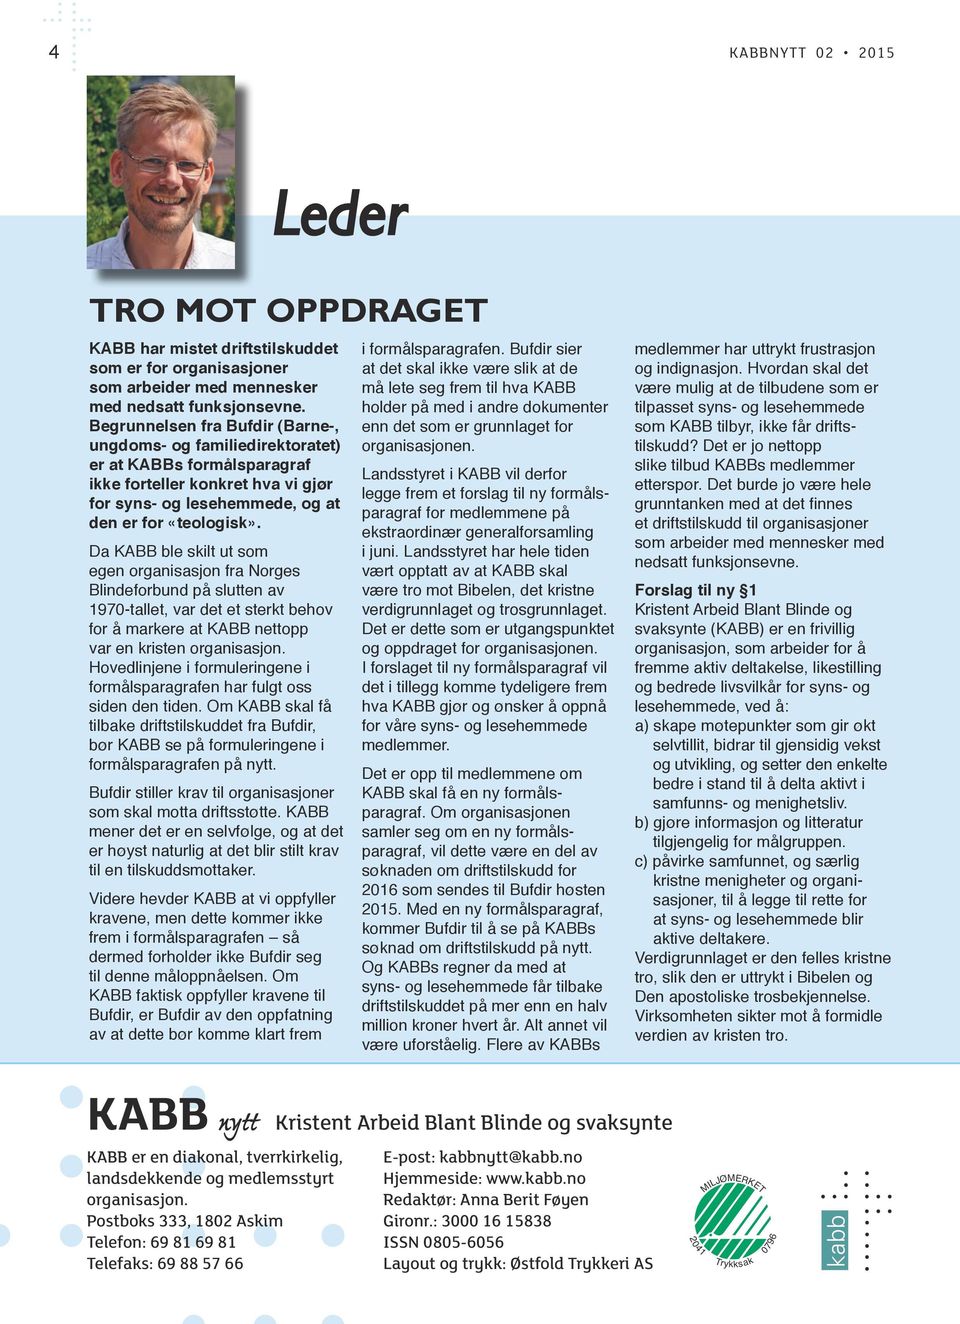 Da KABB ble skilt ut som egen organisasjon fra Norges Blindeforbund på slutten av 1970-tallet, var det et sterkt behov for å markere at KABB nettopp var en kristen organisasjon.